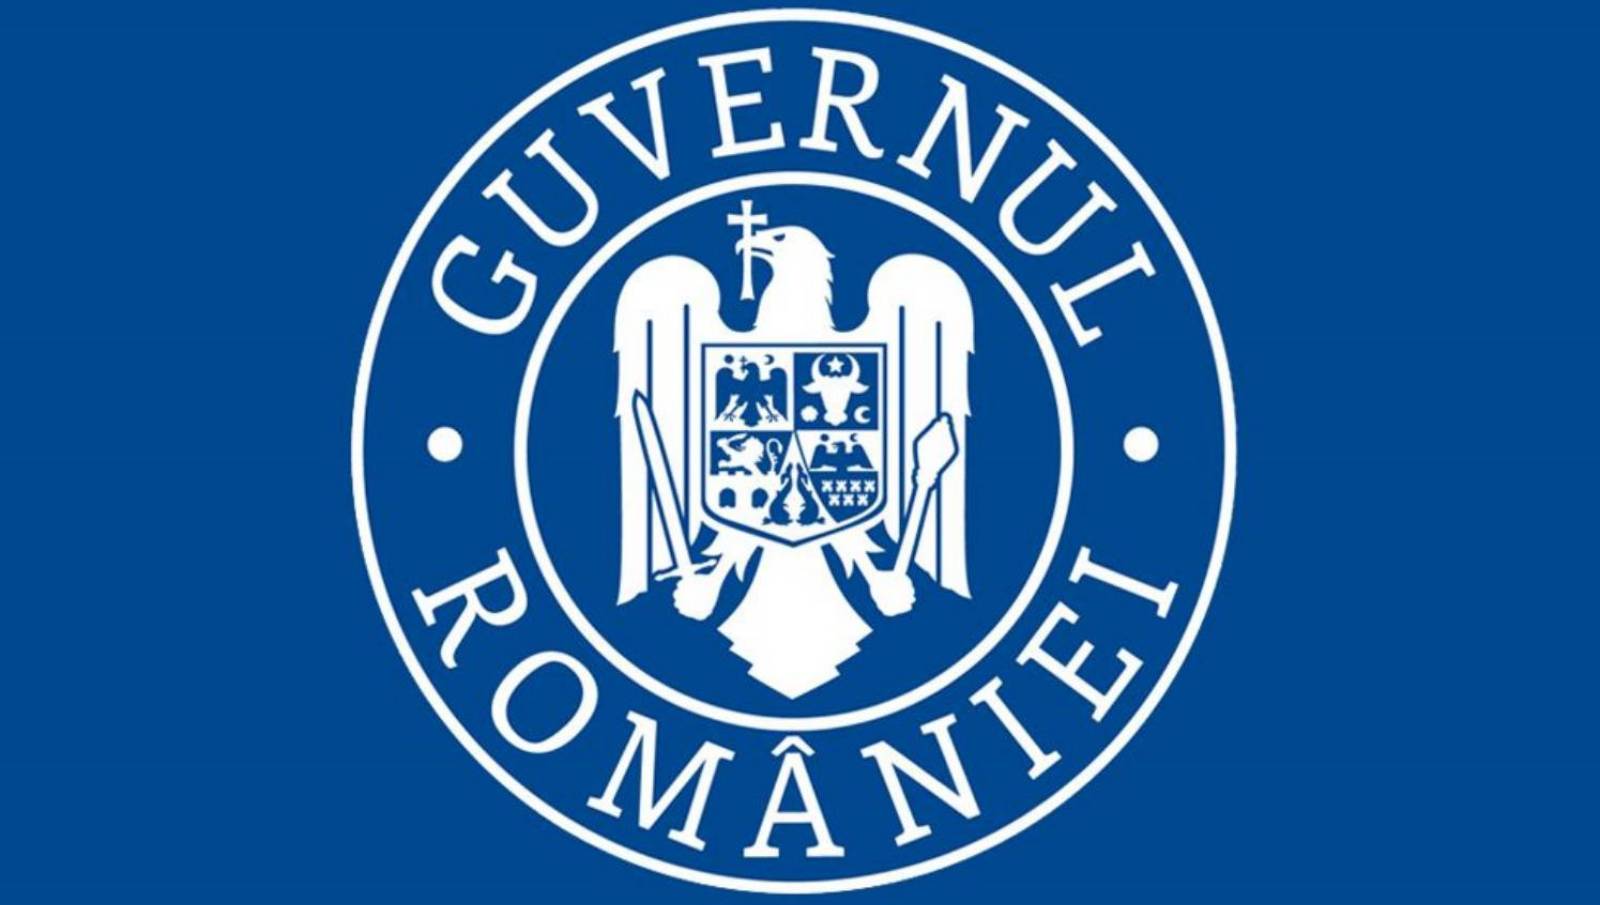 Belangrijkste phishingbericht van de regering van Roemenië